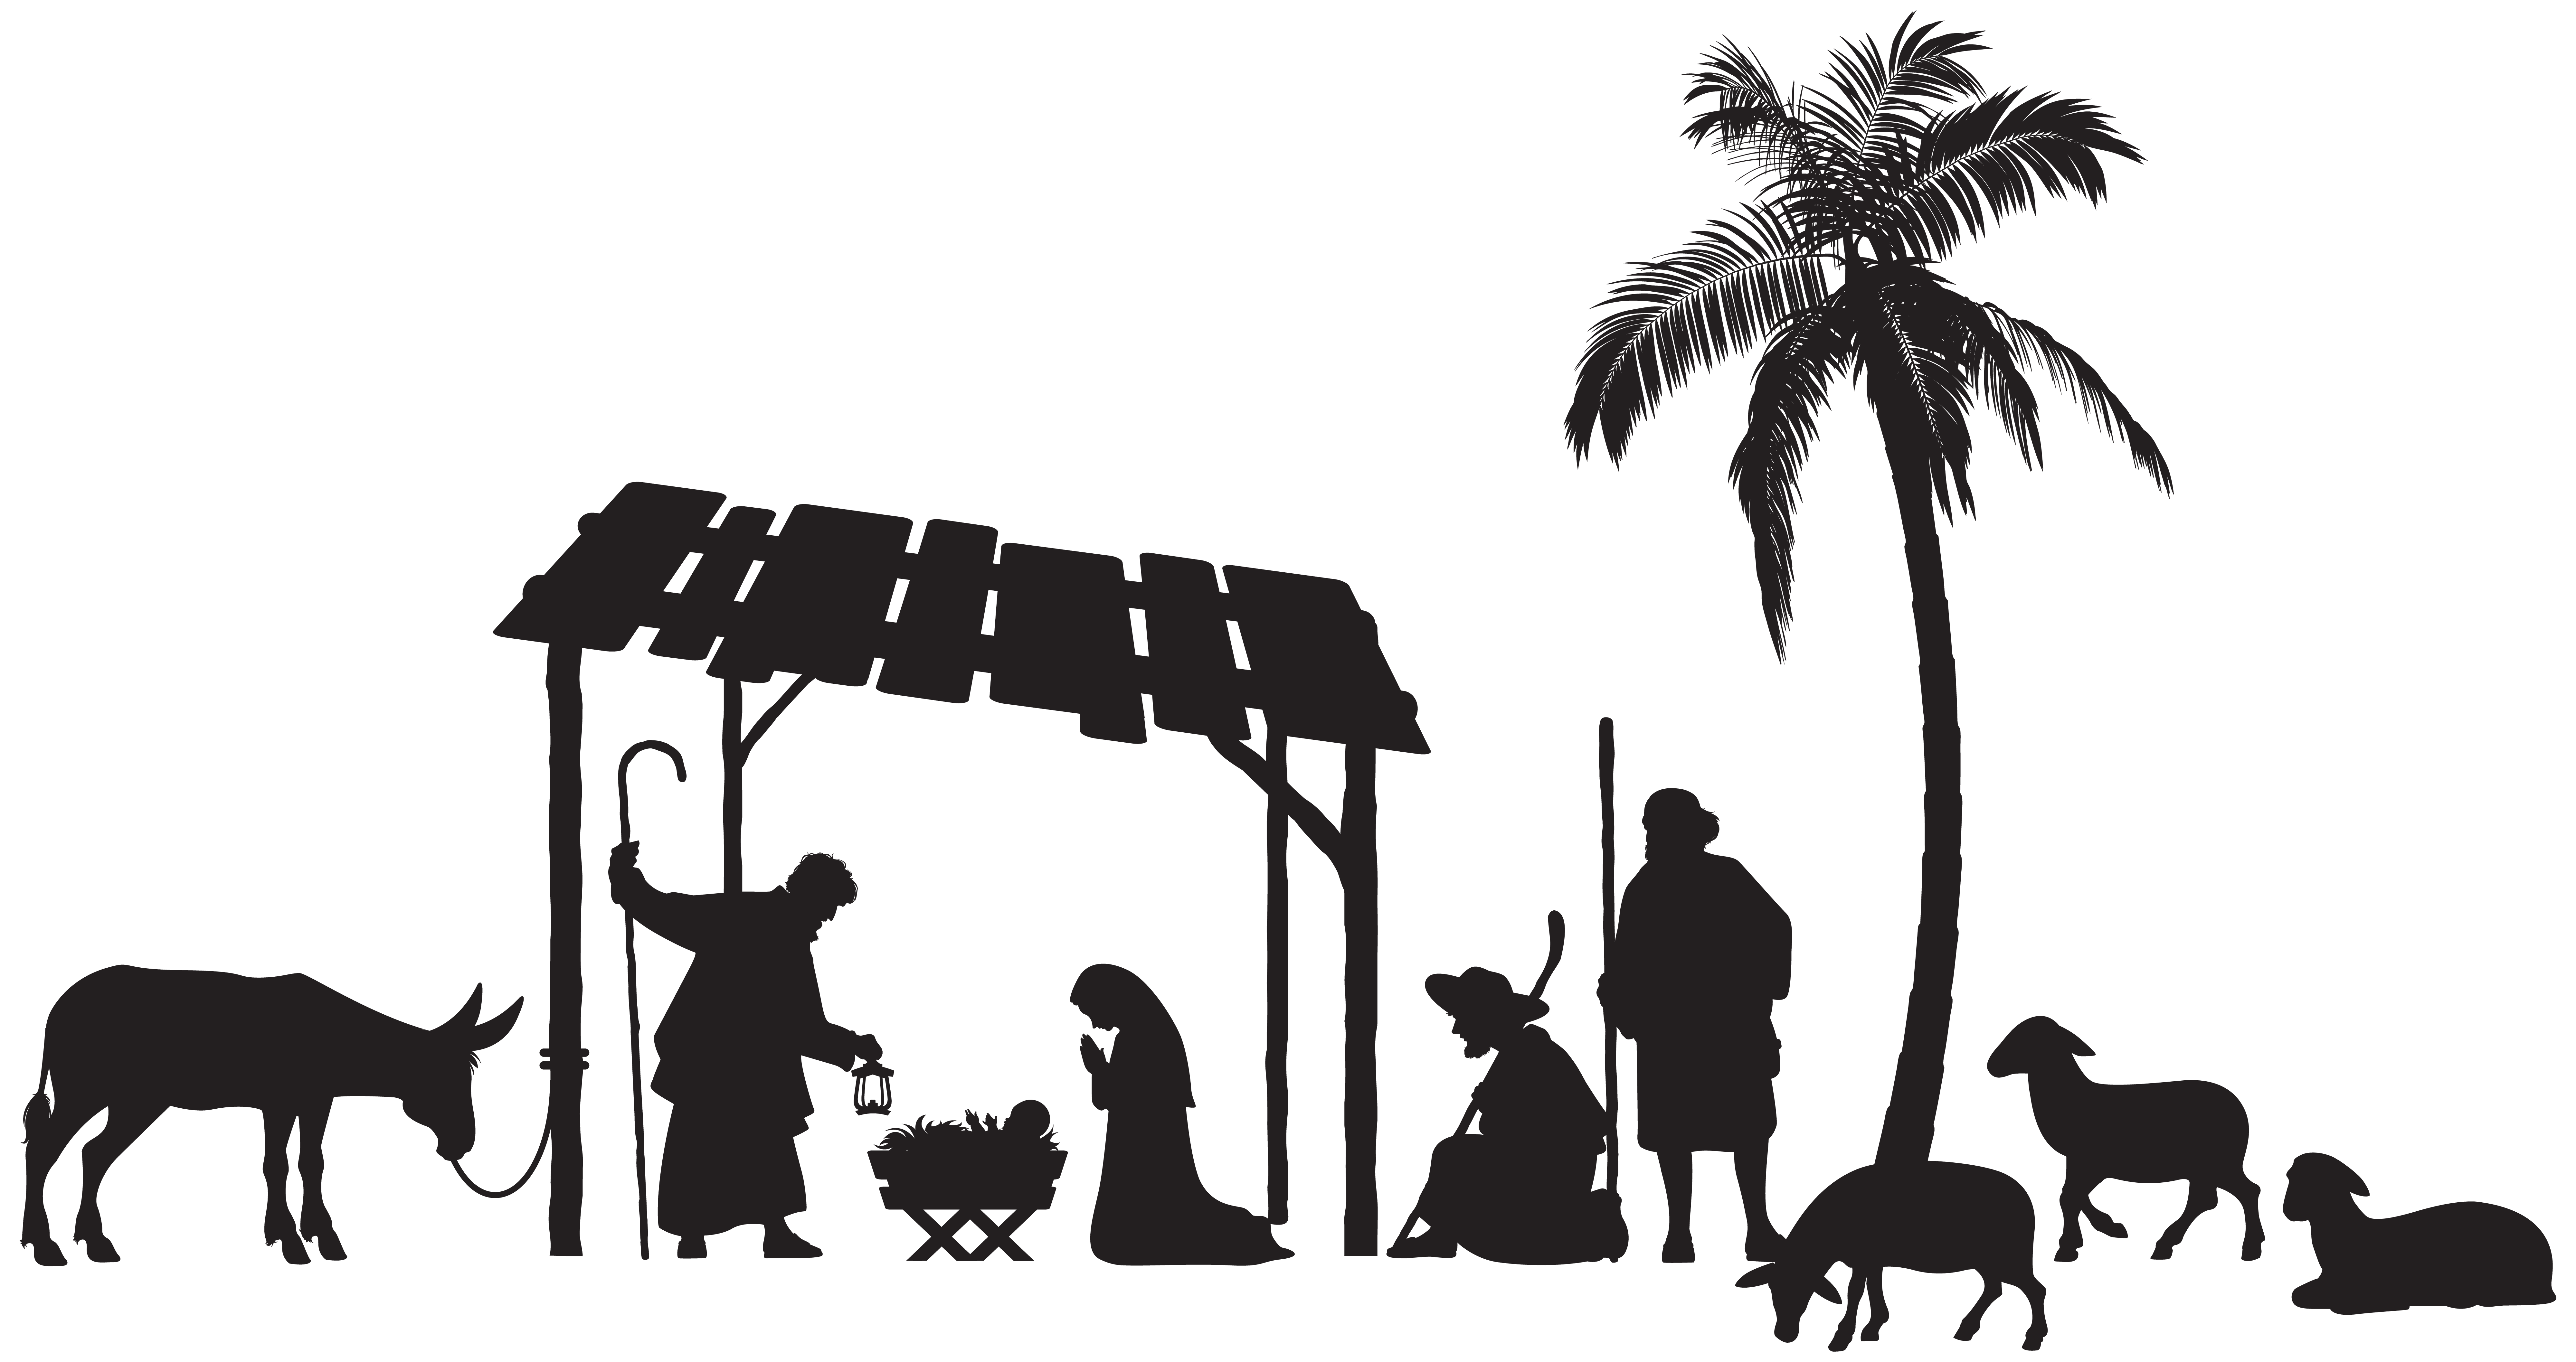 nativity silhouette clip art